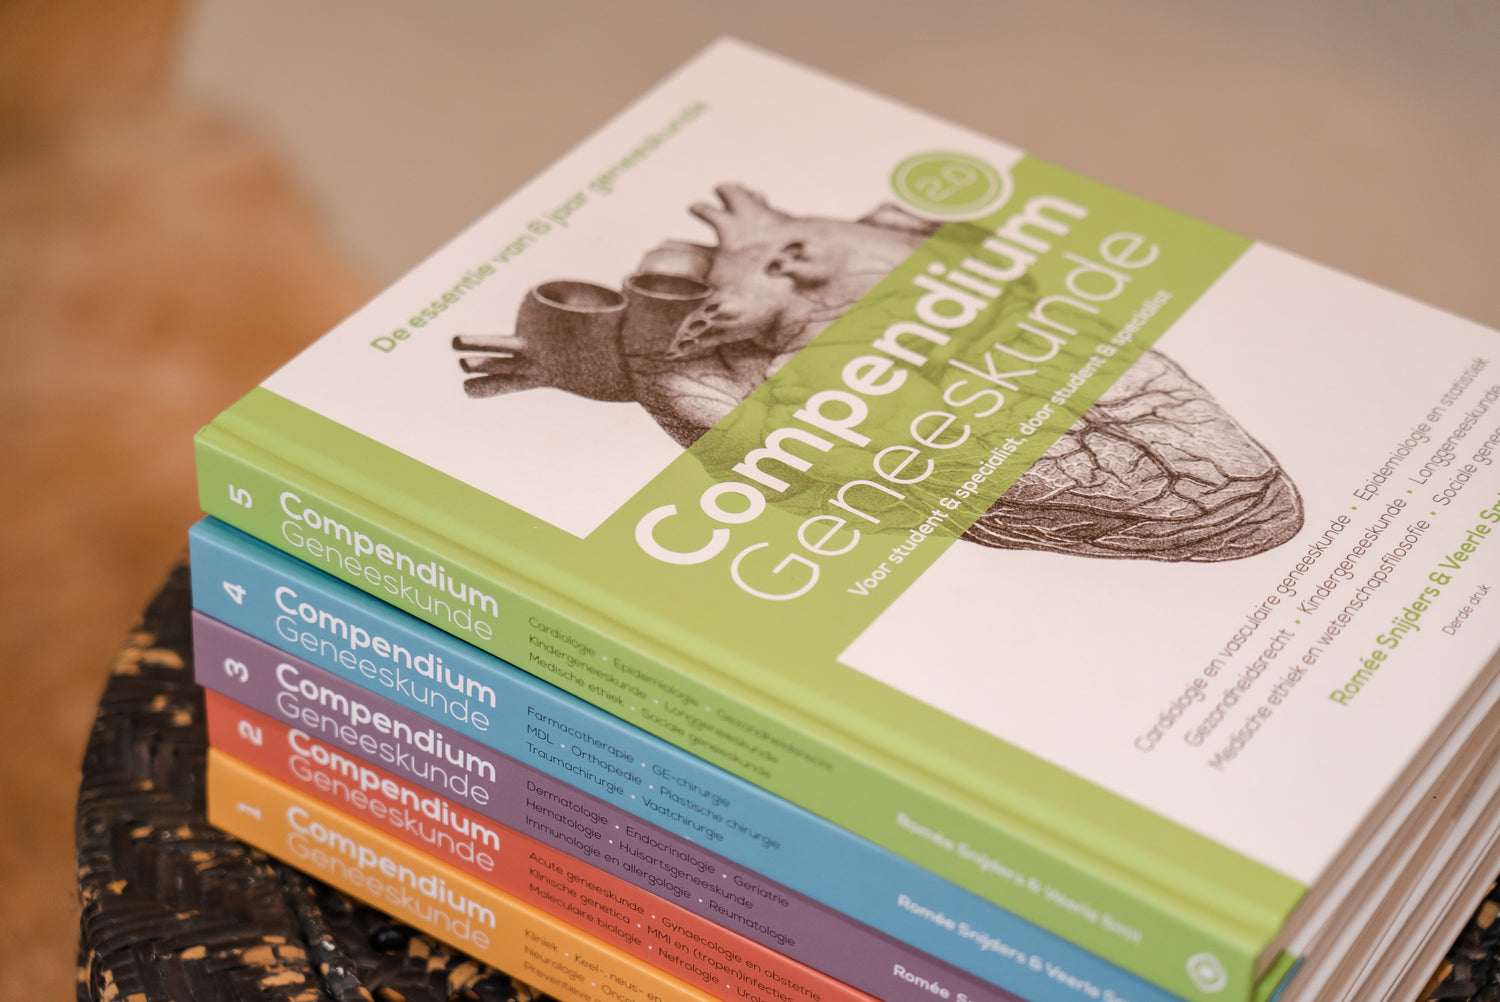 De 5 Compendium Geneeskunde boekenreeks met daarin 35 medische disciplines